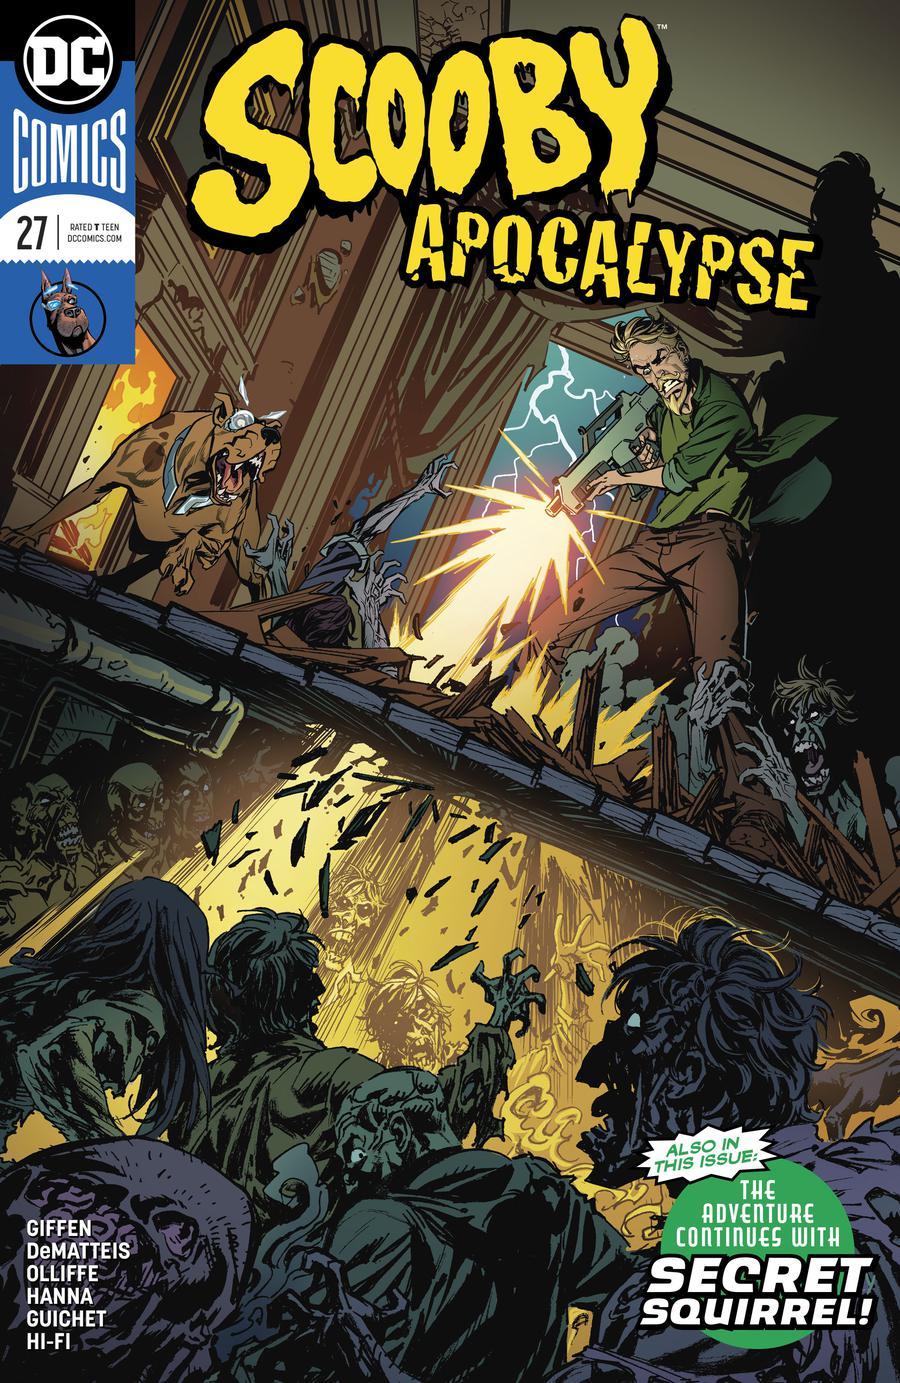 Scooby Apocalypse Vol. 1 #27